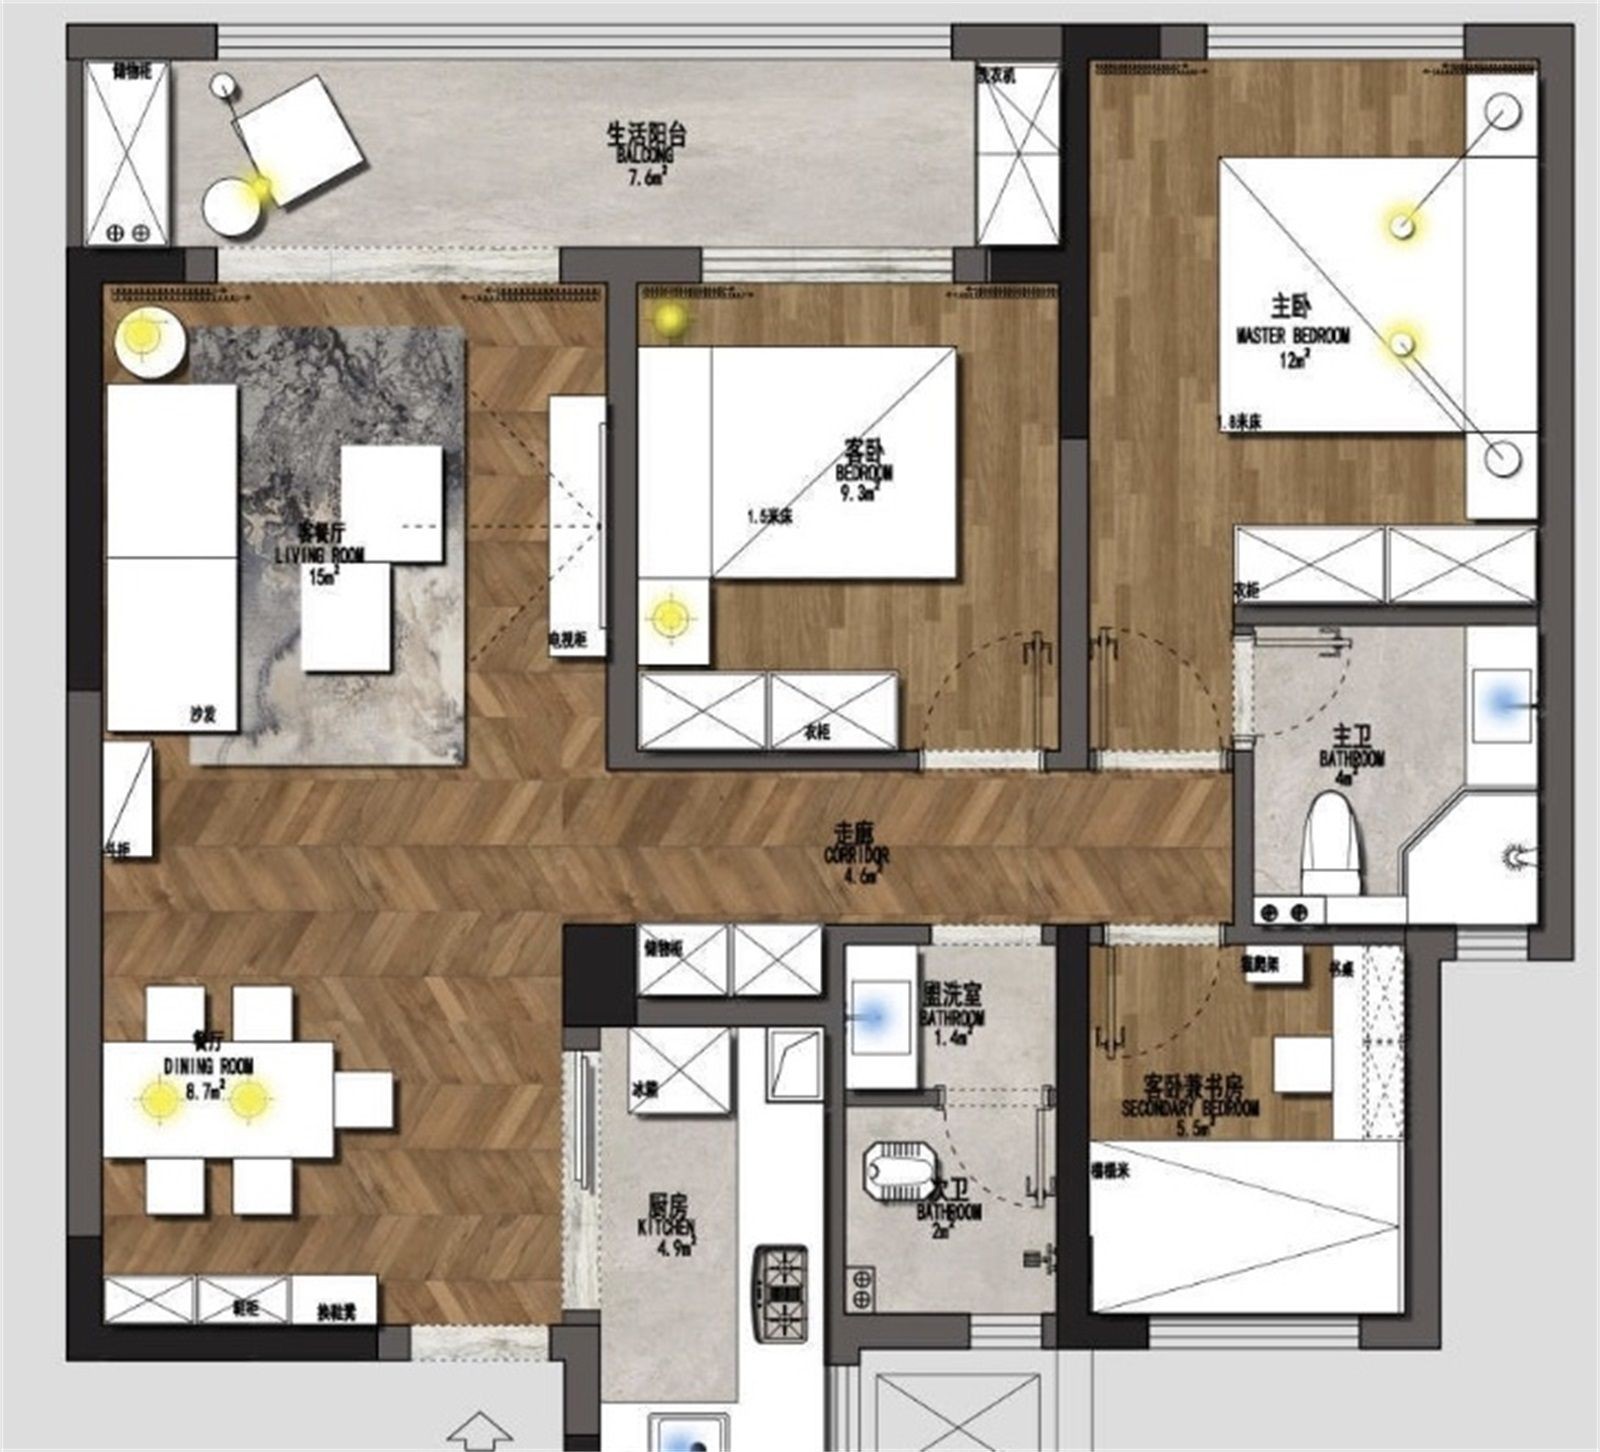 110现代三房装修效果图,享受繁华都市的宁静生活装修案例效果图-美广网